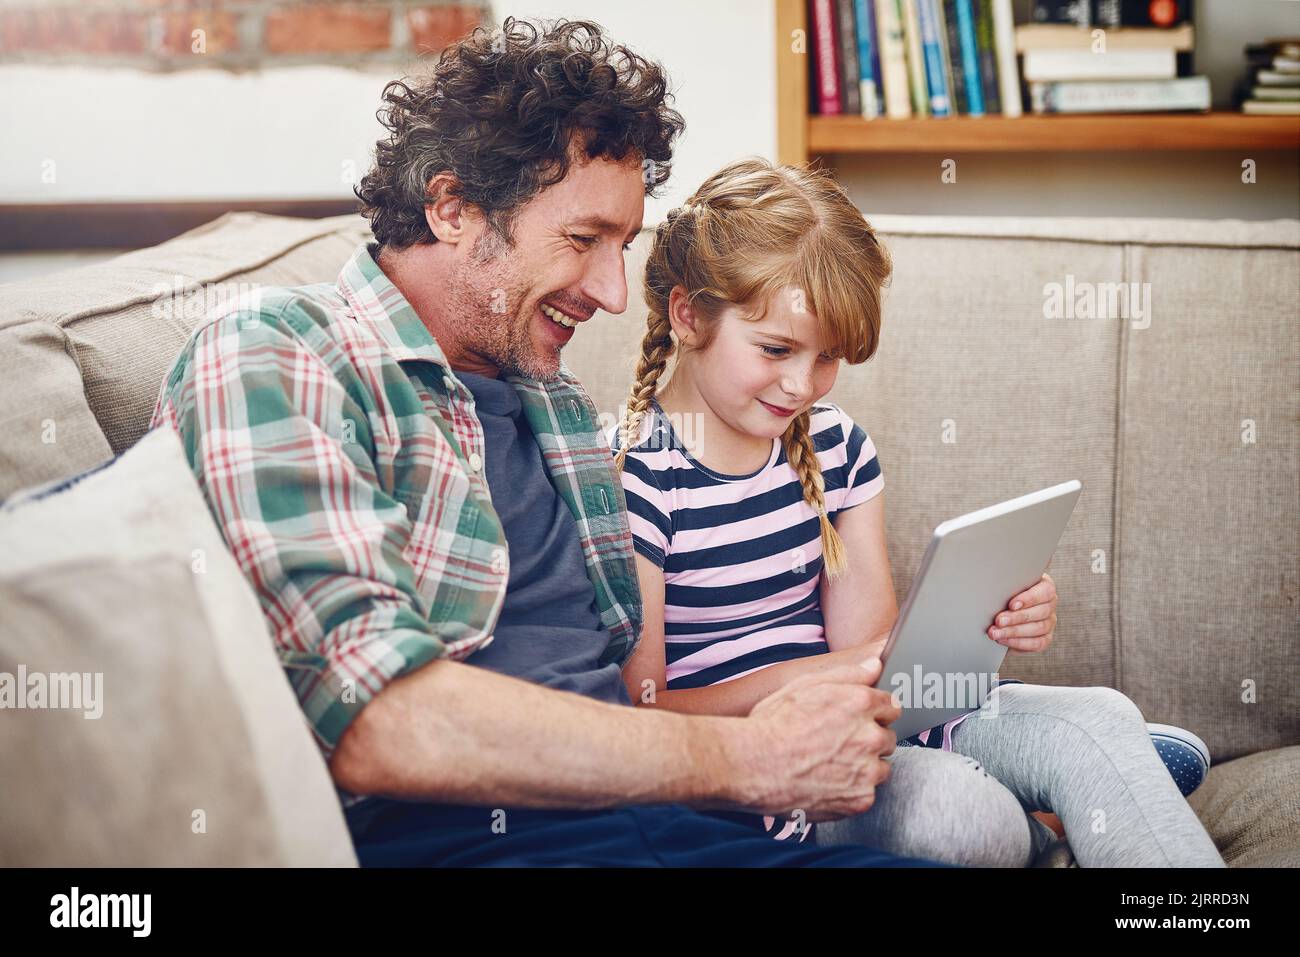 Mal sehen, ob ich meine Highscore schlagen kann. Ein Vater und seine kleine Tochter mit einem digitalen Tablet zu Hause. Stockfoto